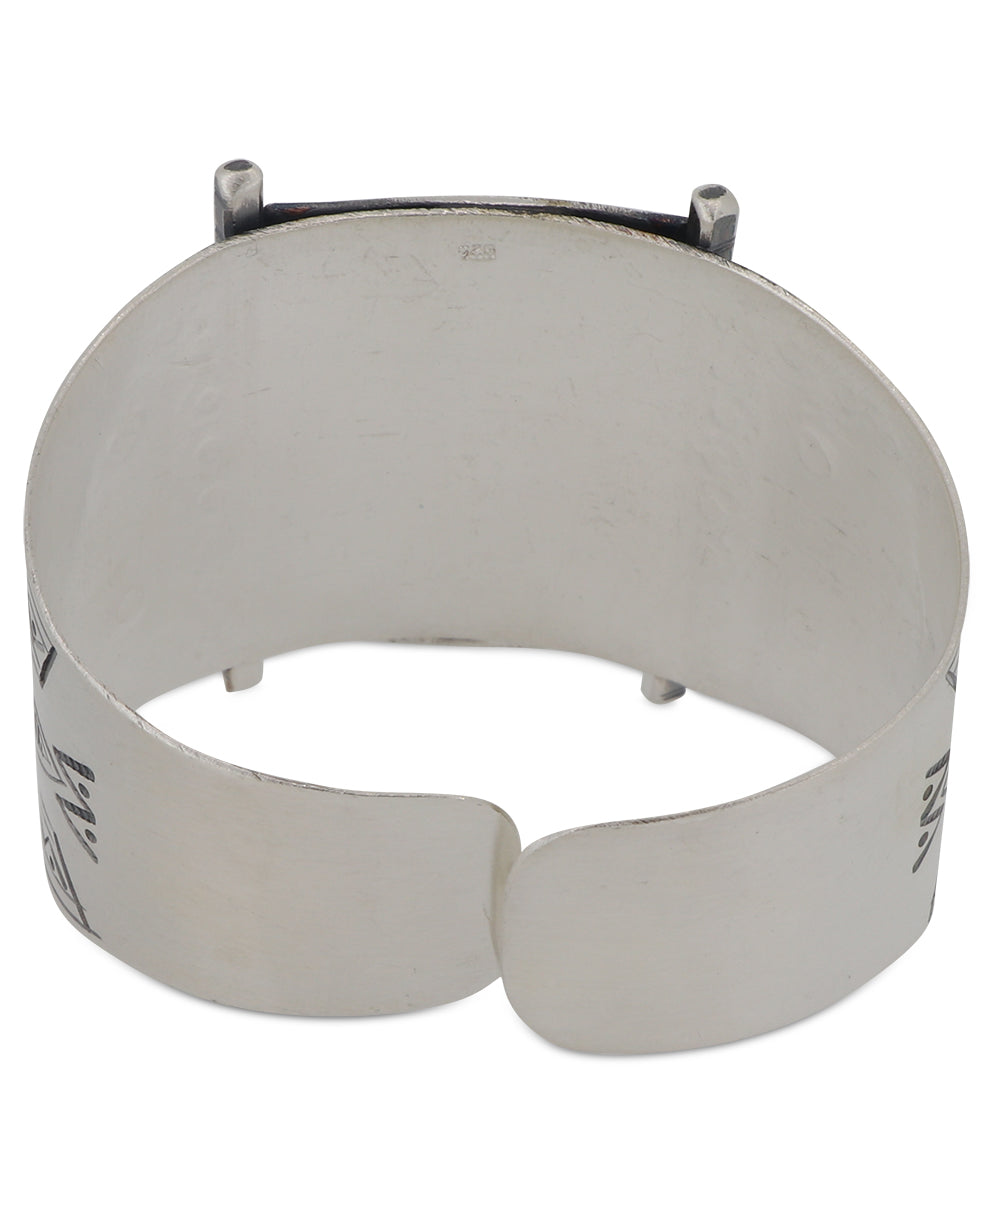 Elegant silver bracelet with adjustable circumference 